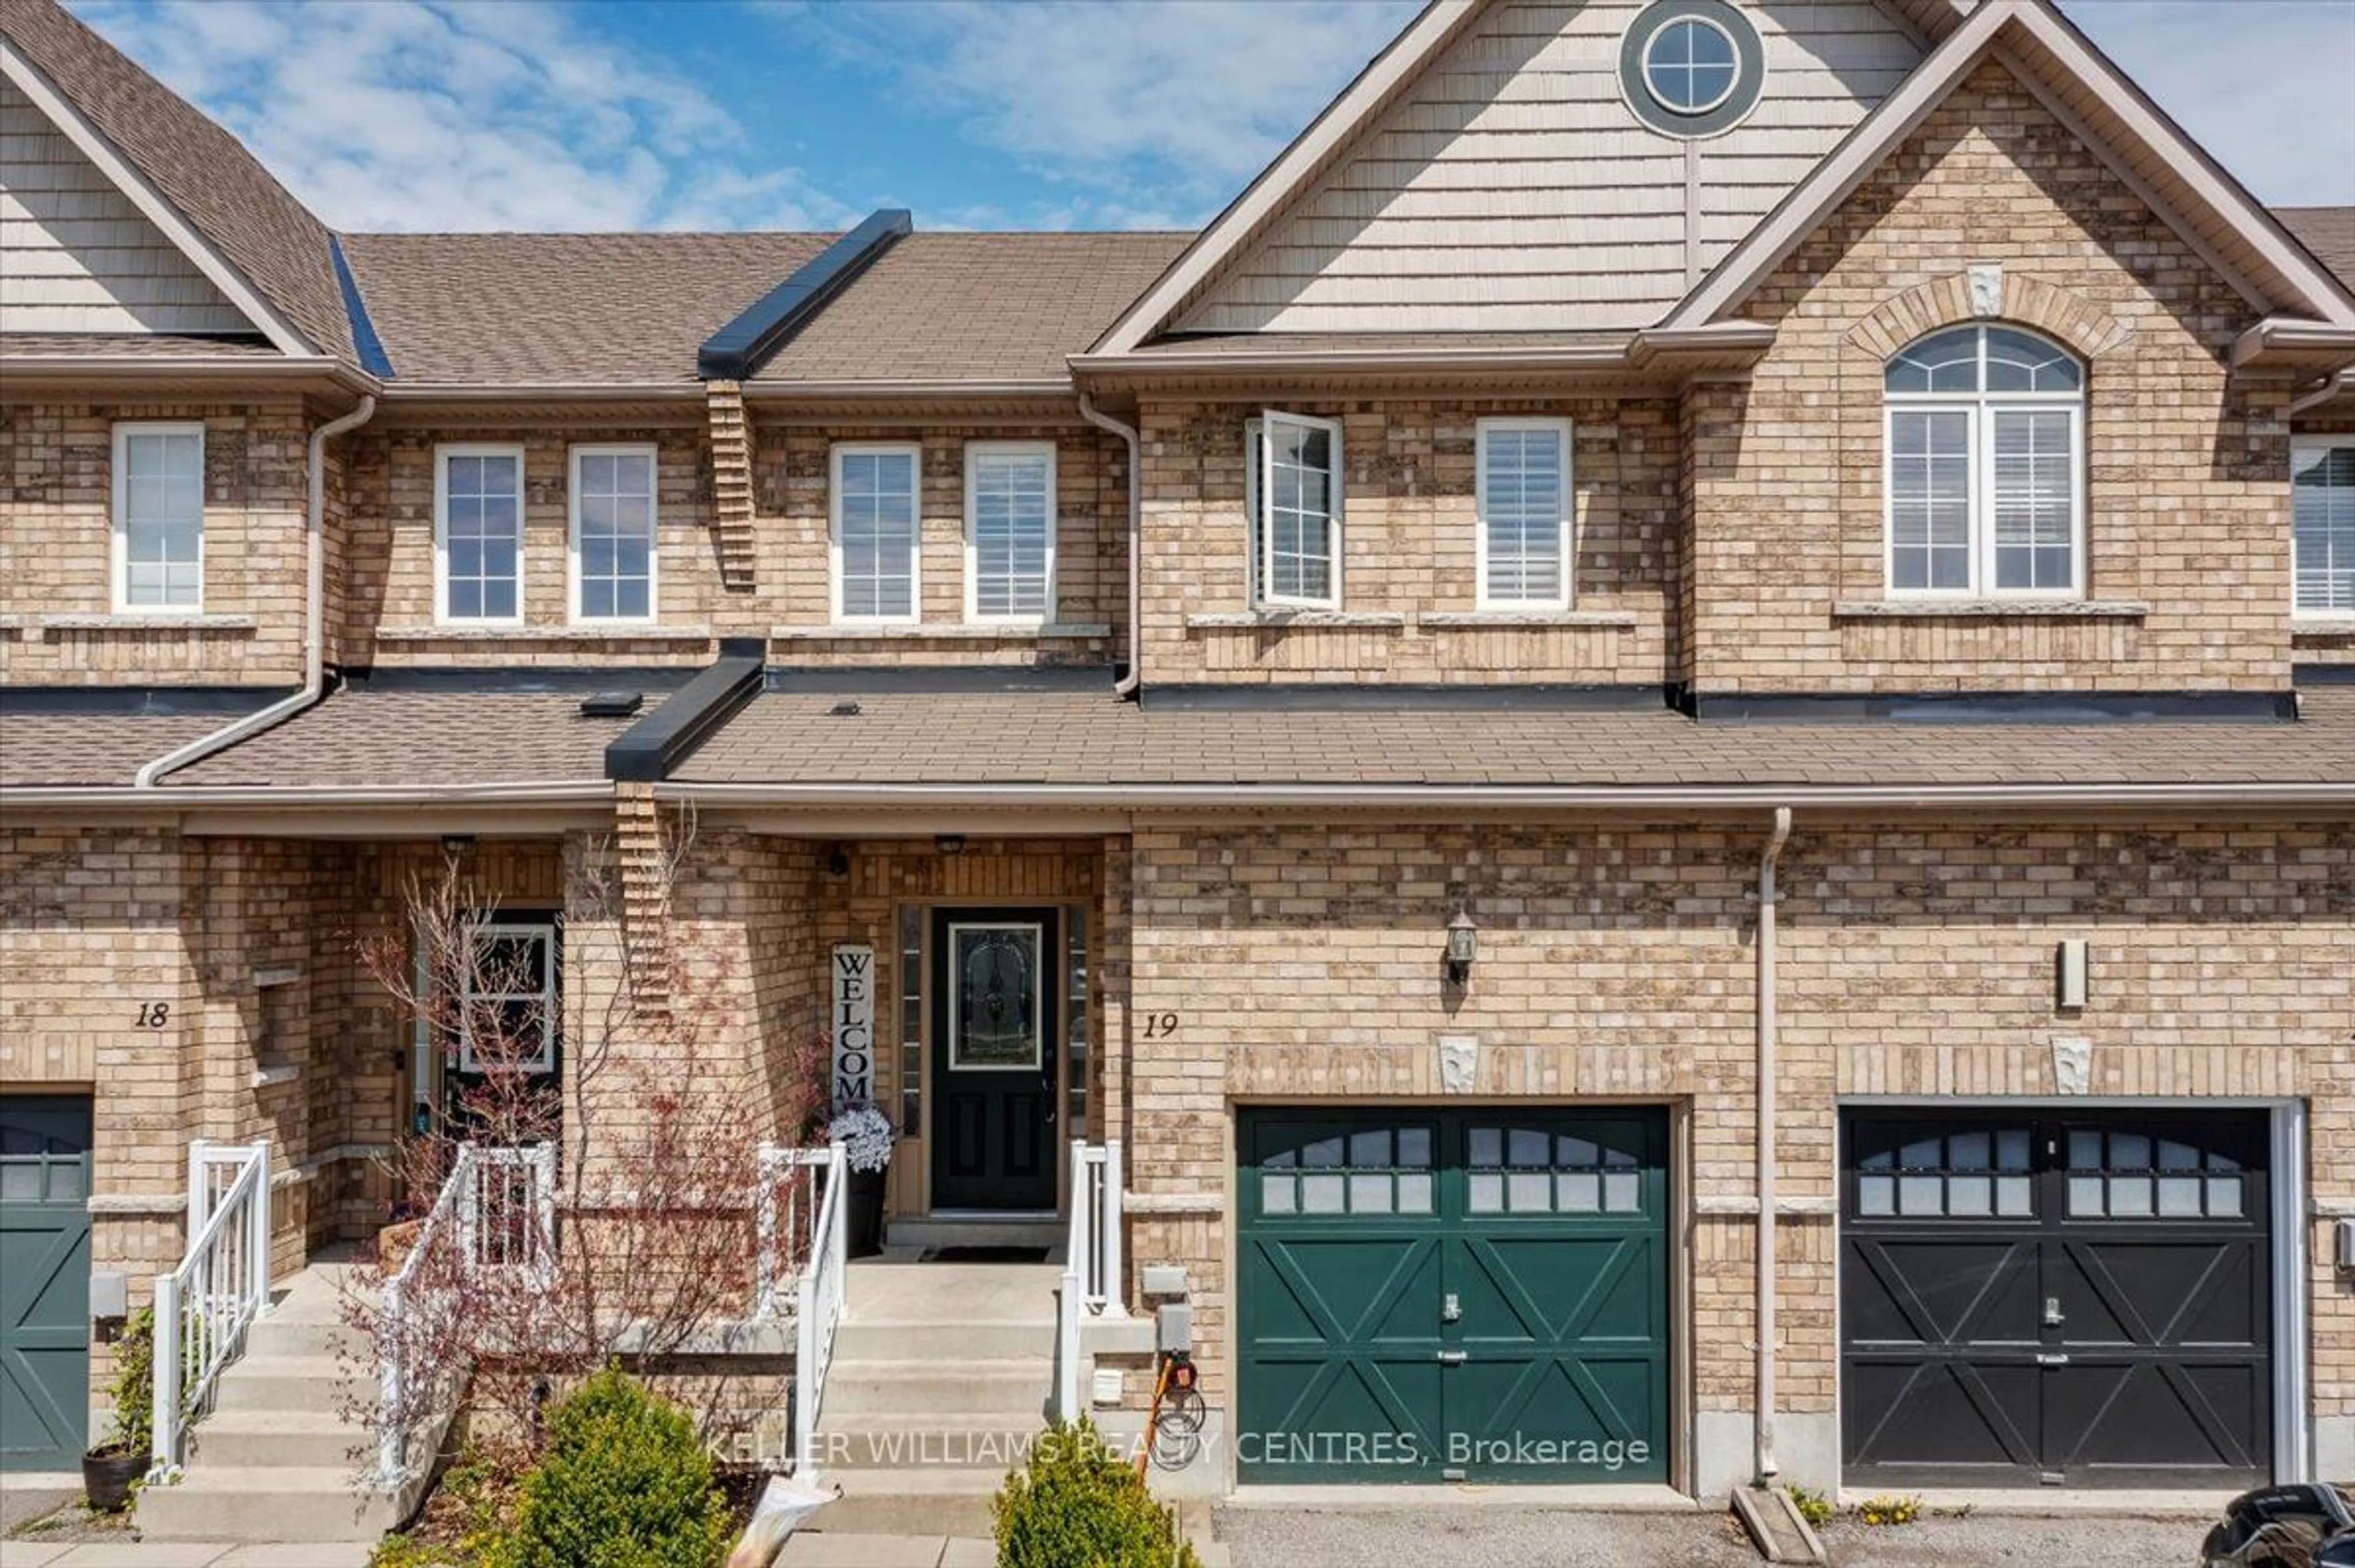 Home with brick exterior material for 19 Caserta St, Georgina Ontario L4P 0E6